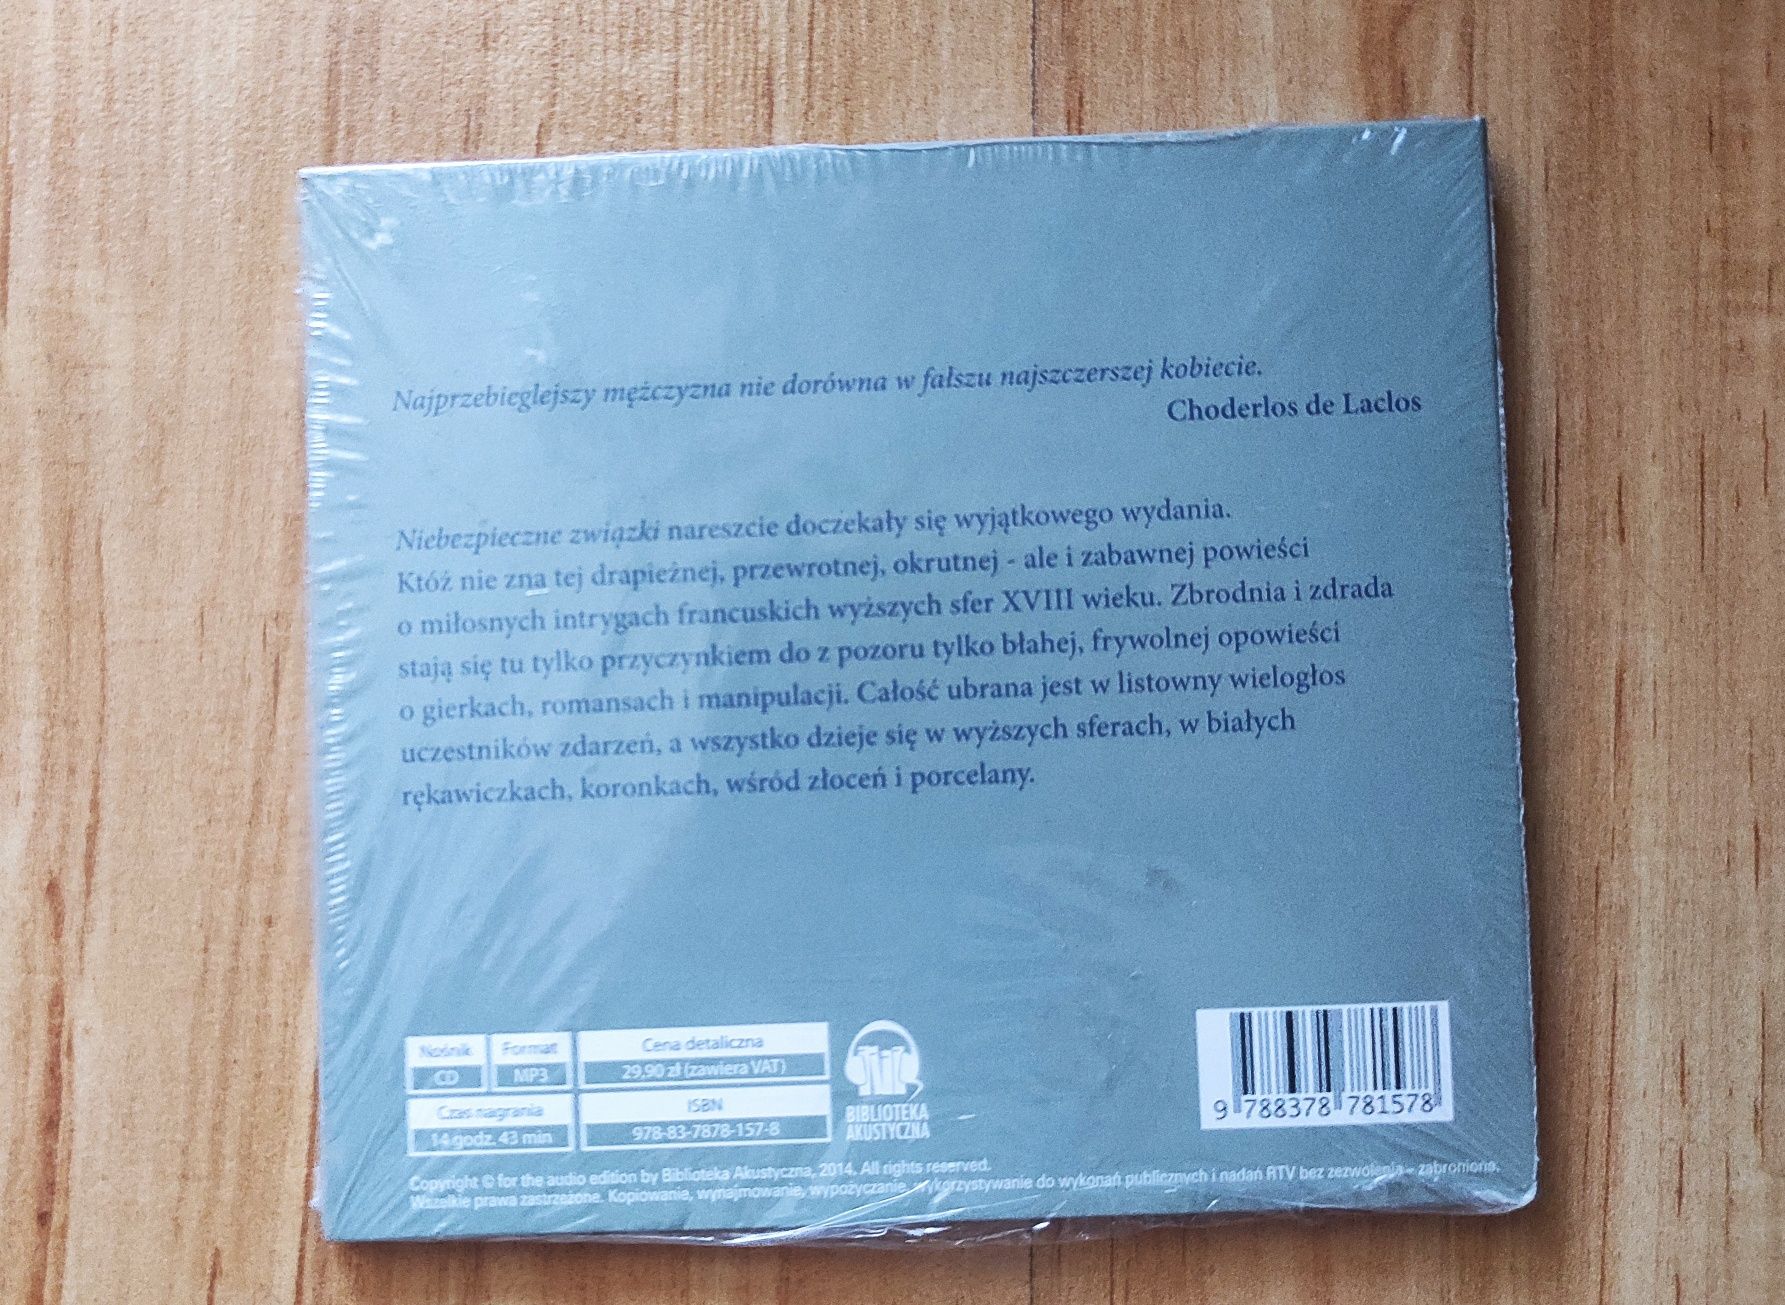 Audiobook "Niebezpieczne związki" - CD, MP3 - Choderlos de Laclos